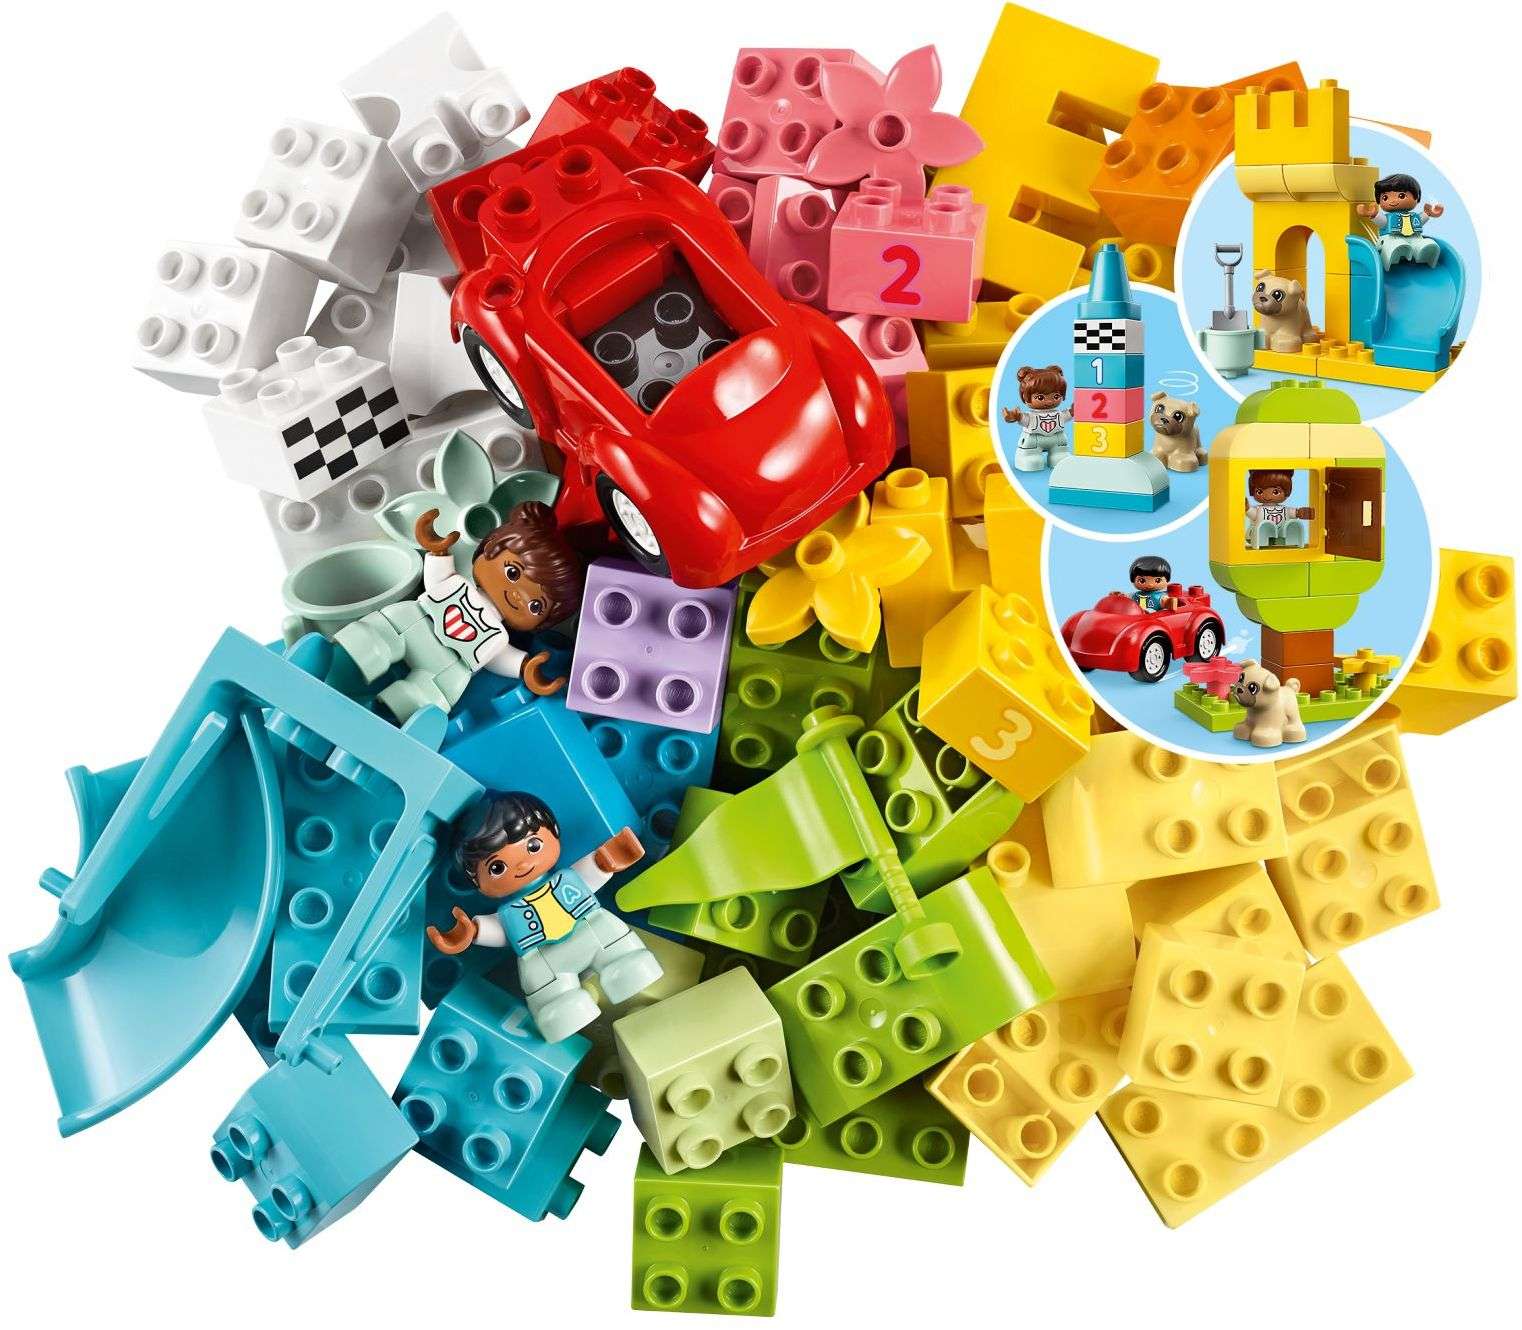 LEGO DUPLO - Deluxe Brick Box (10914)